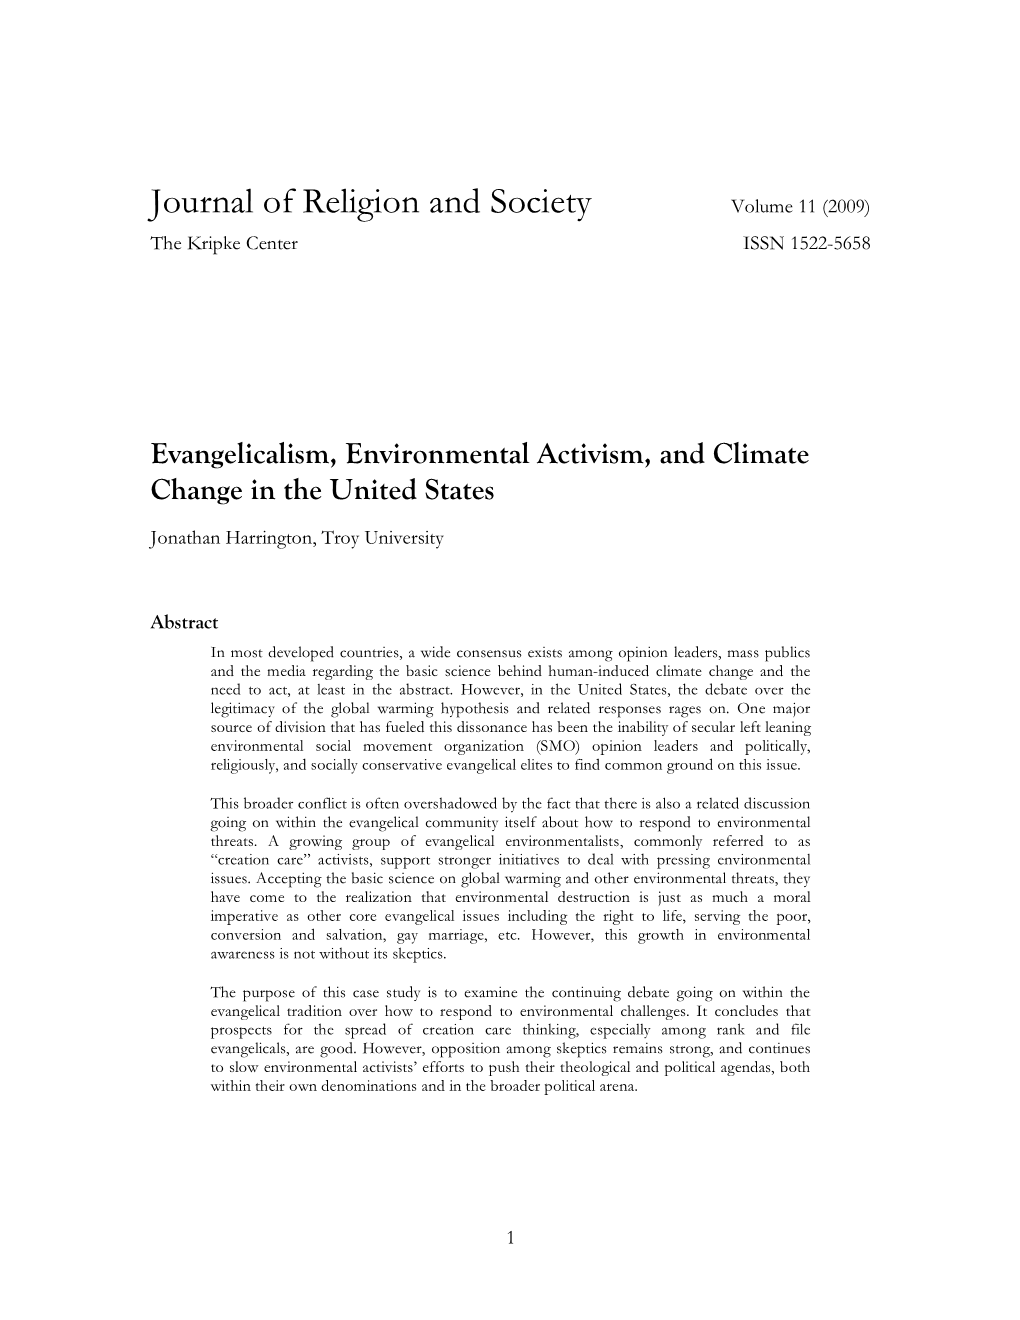 Journal of Religion and Society Volume 11 (2009) the Kripke Center ISSN 1522-5658